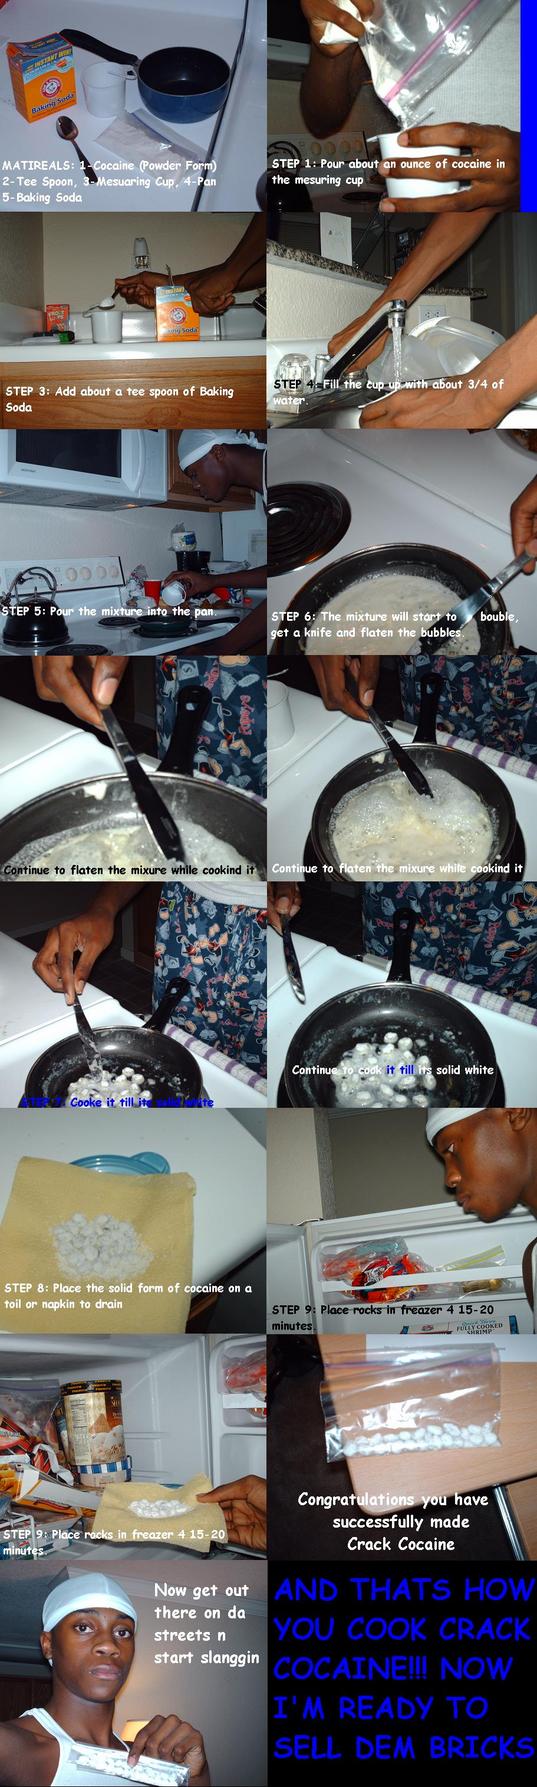 how crack cocaine made